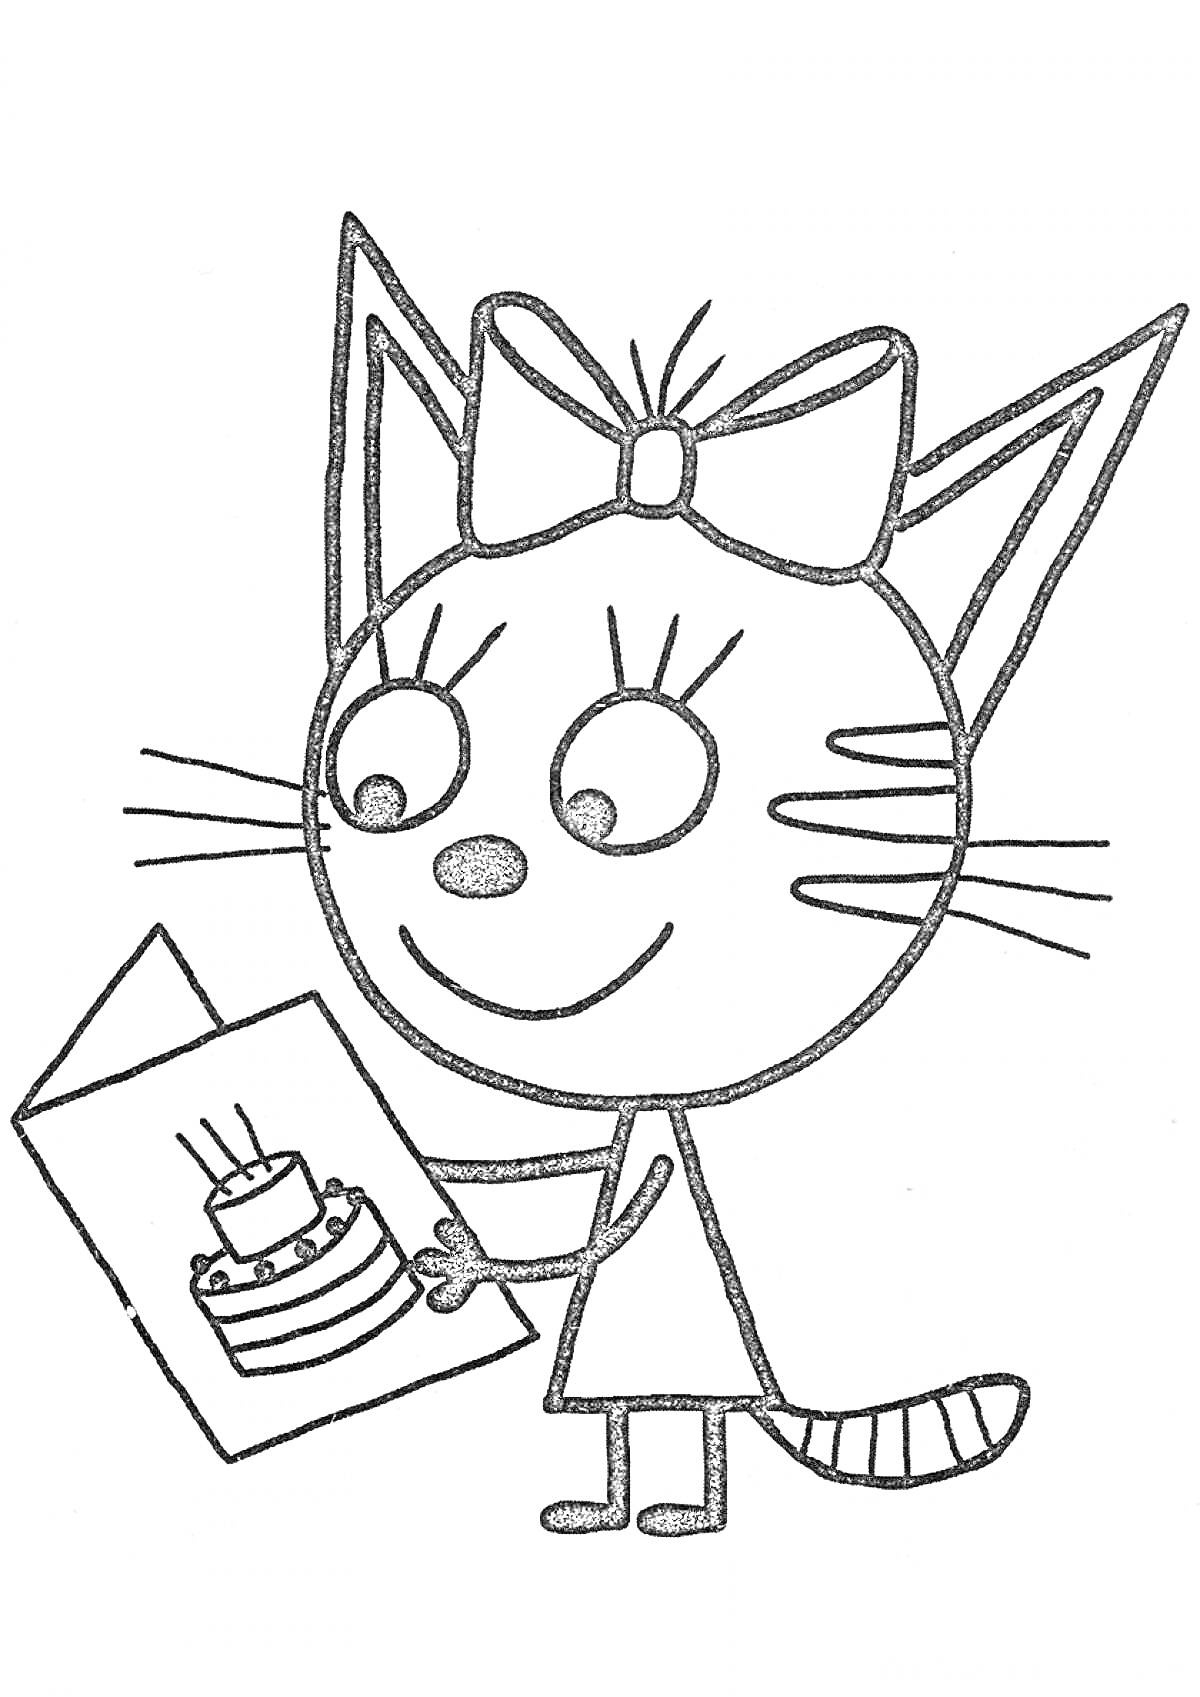 Кот с бантом, читающий открытку с рисунком торта